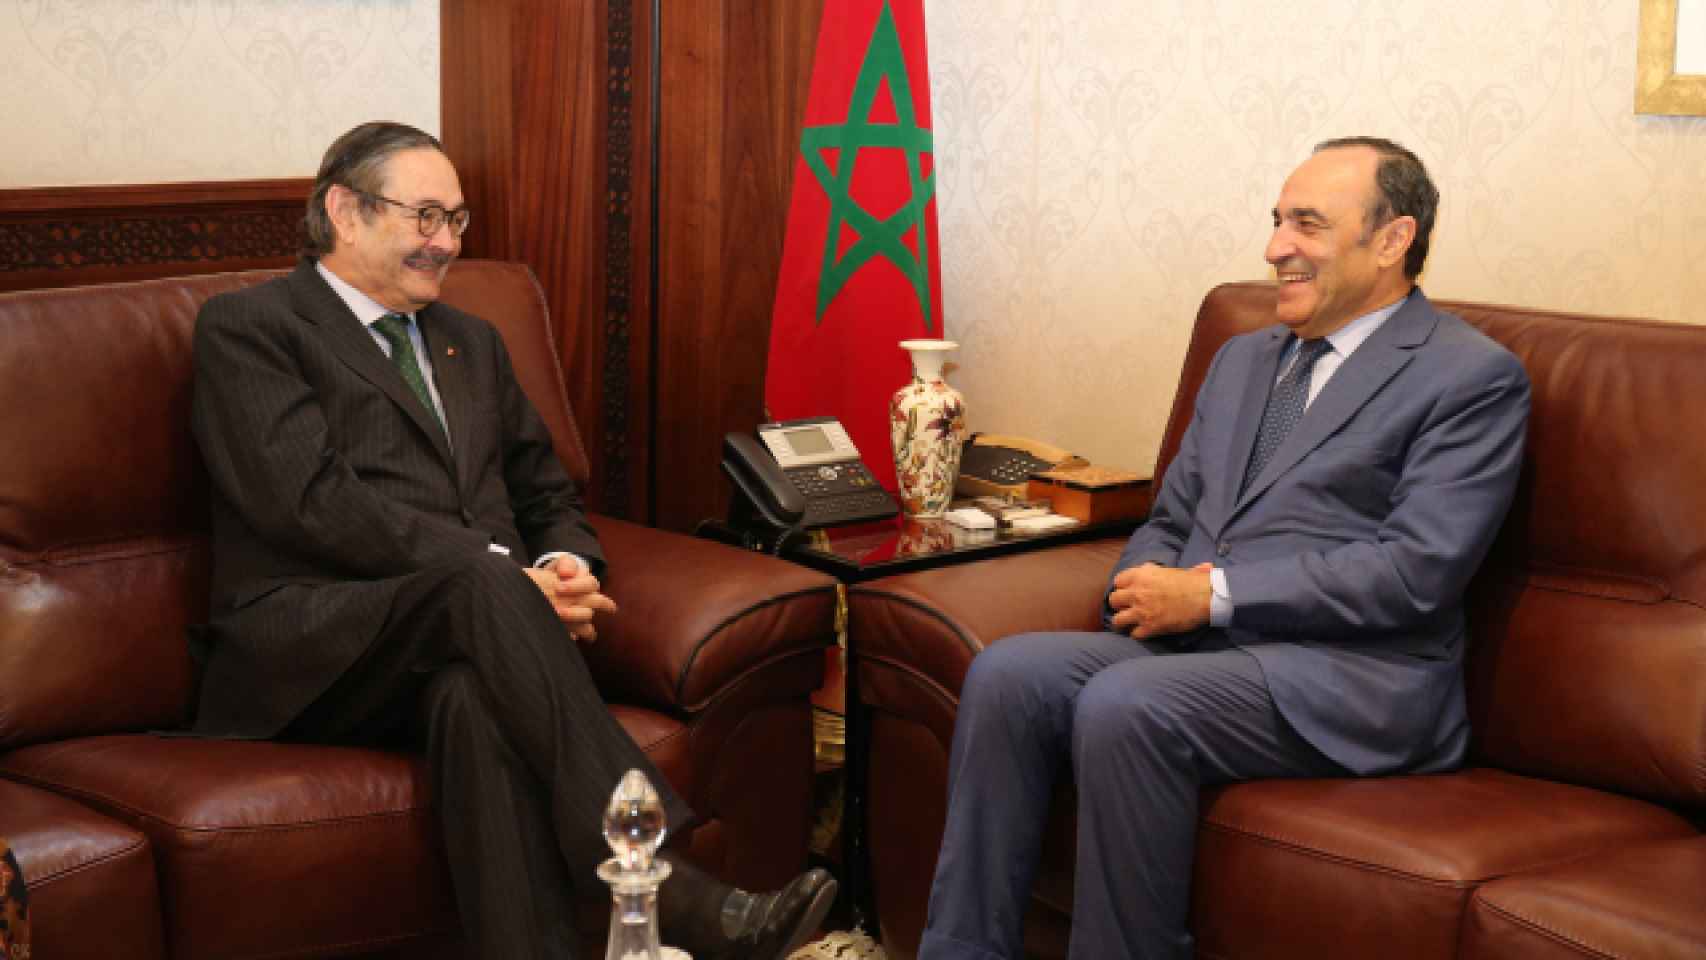 El embajador de España en Marruecos, Ricardo Díez-Hochleitner, con el presidente de la Cámara de representantes del país vecino.